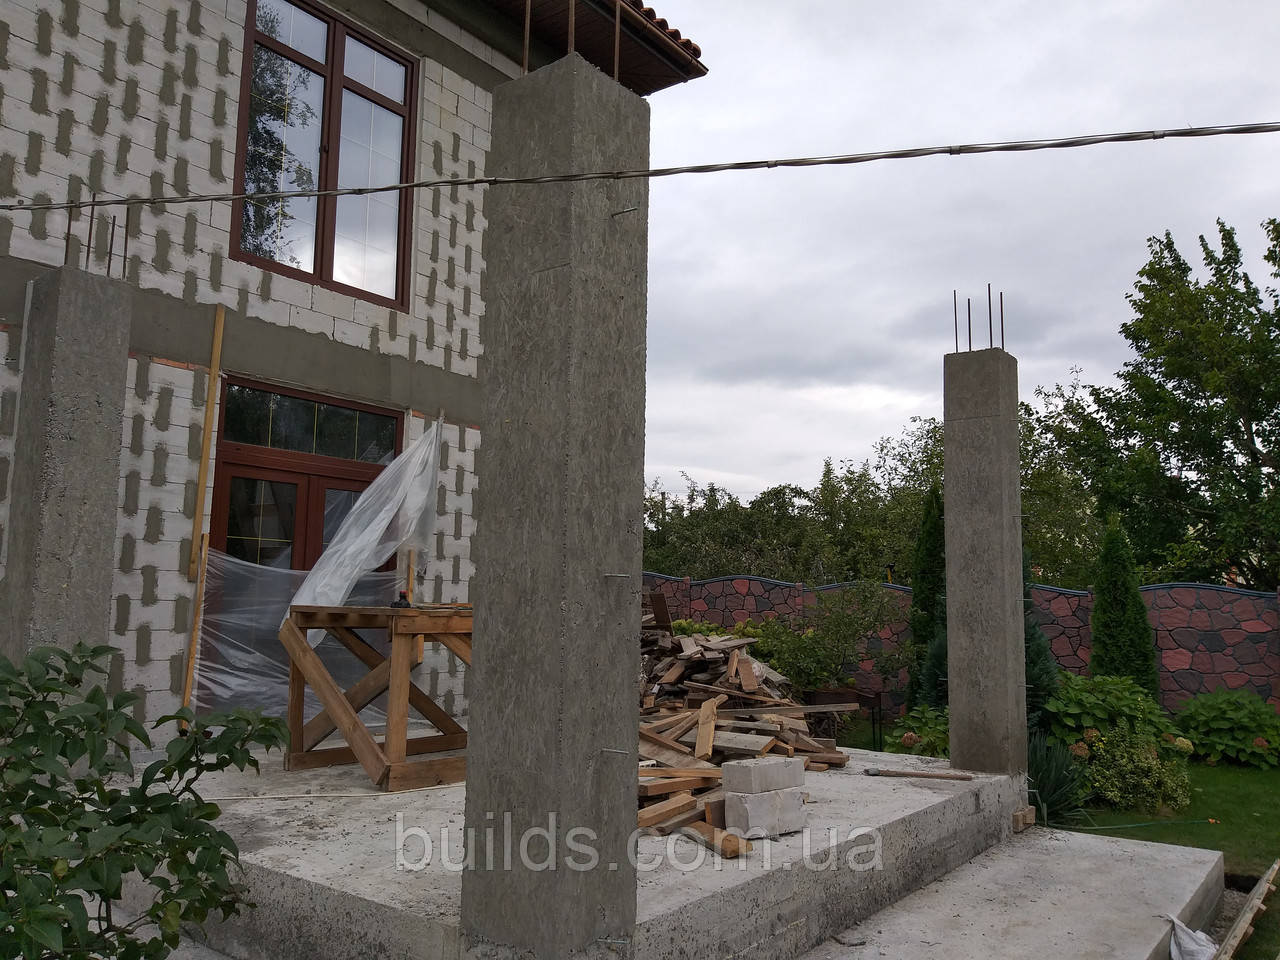 Заливання бетонних колон